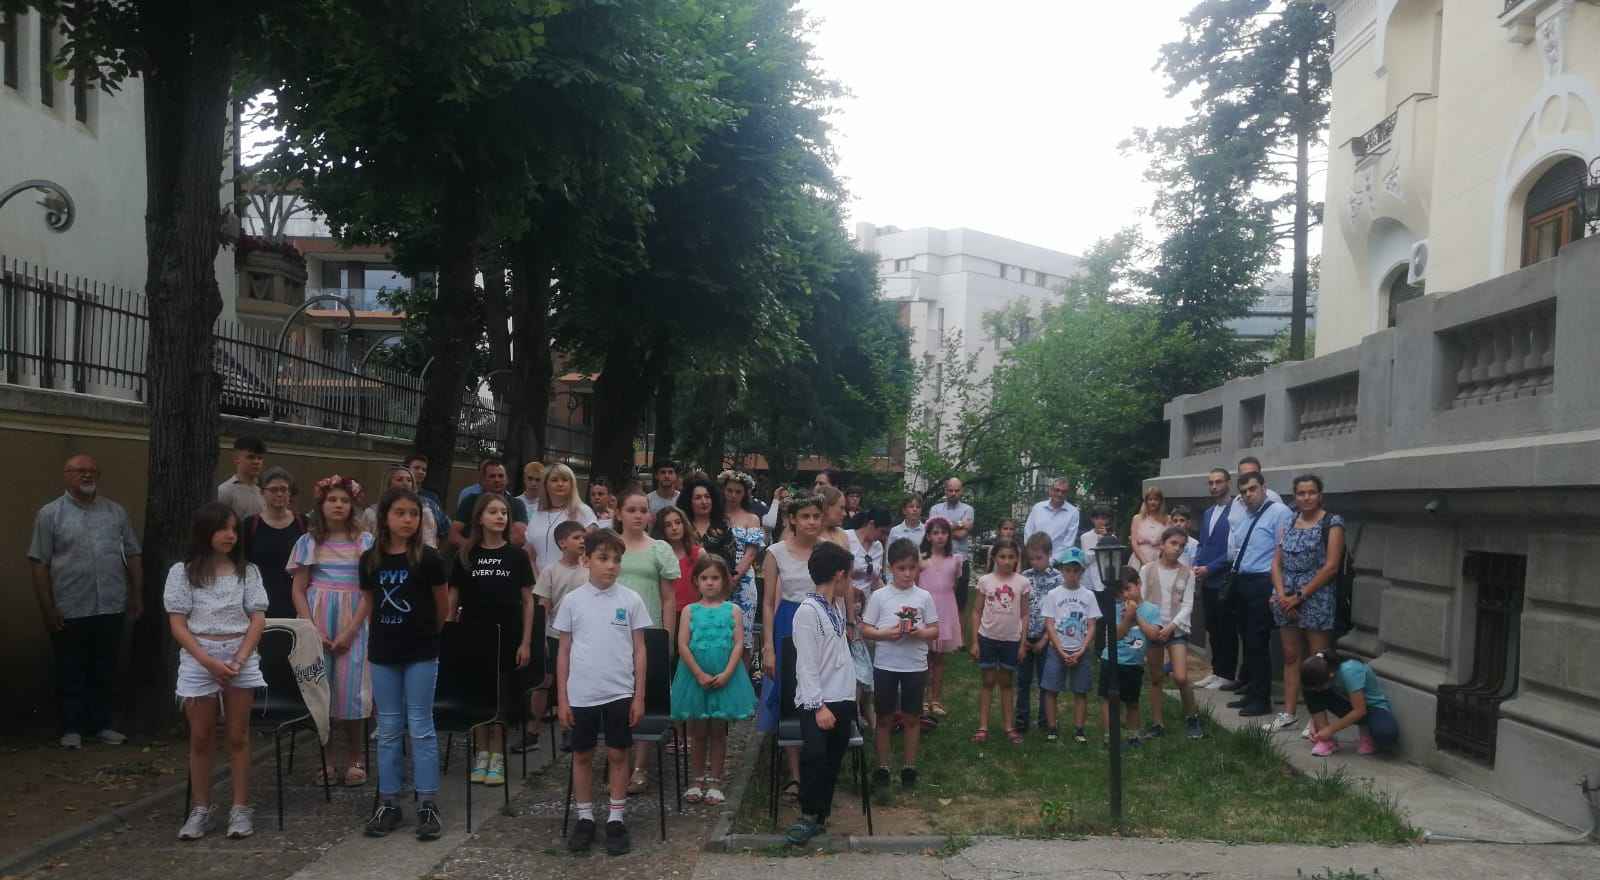 Tържество за края на учебната година се проведе в Българското неделно училище „Йордан Йовков“